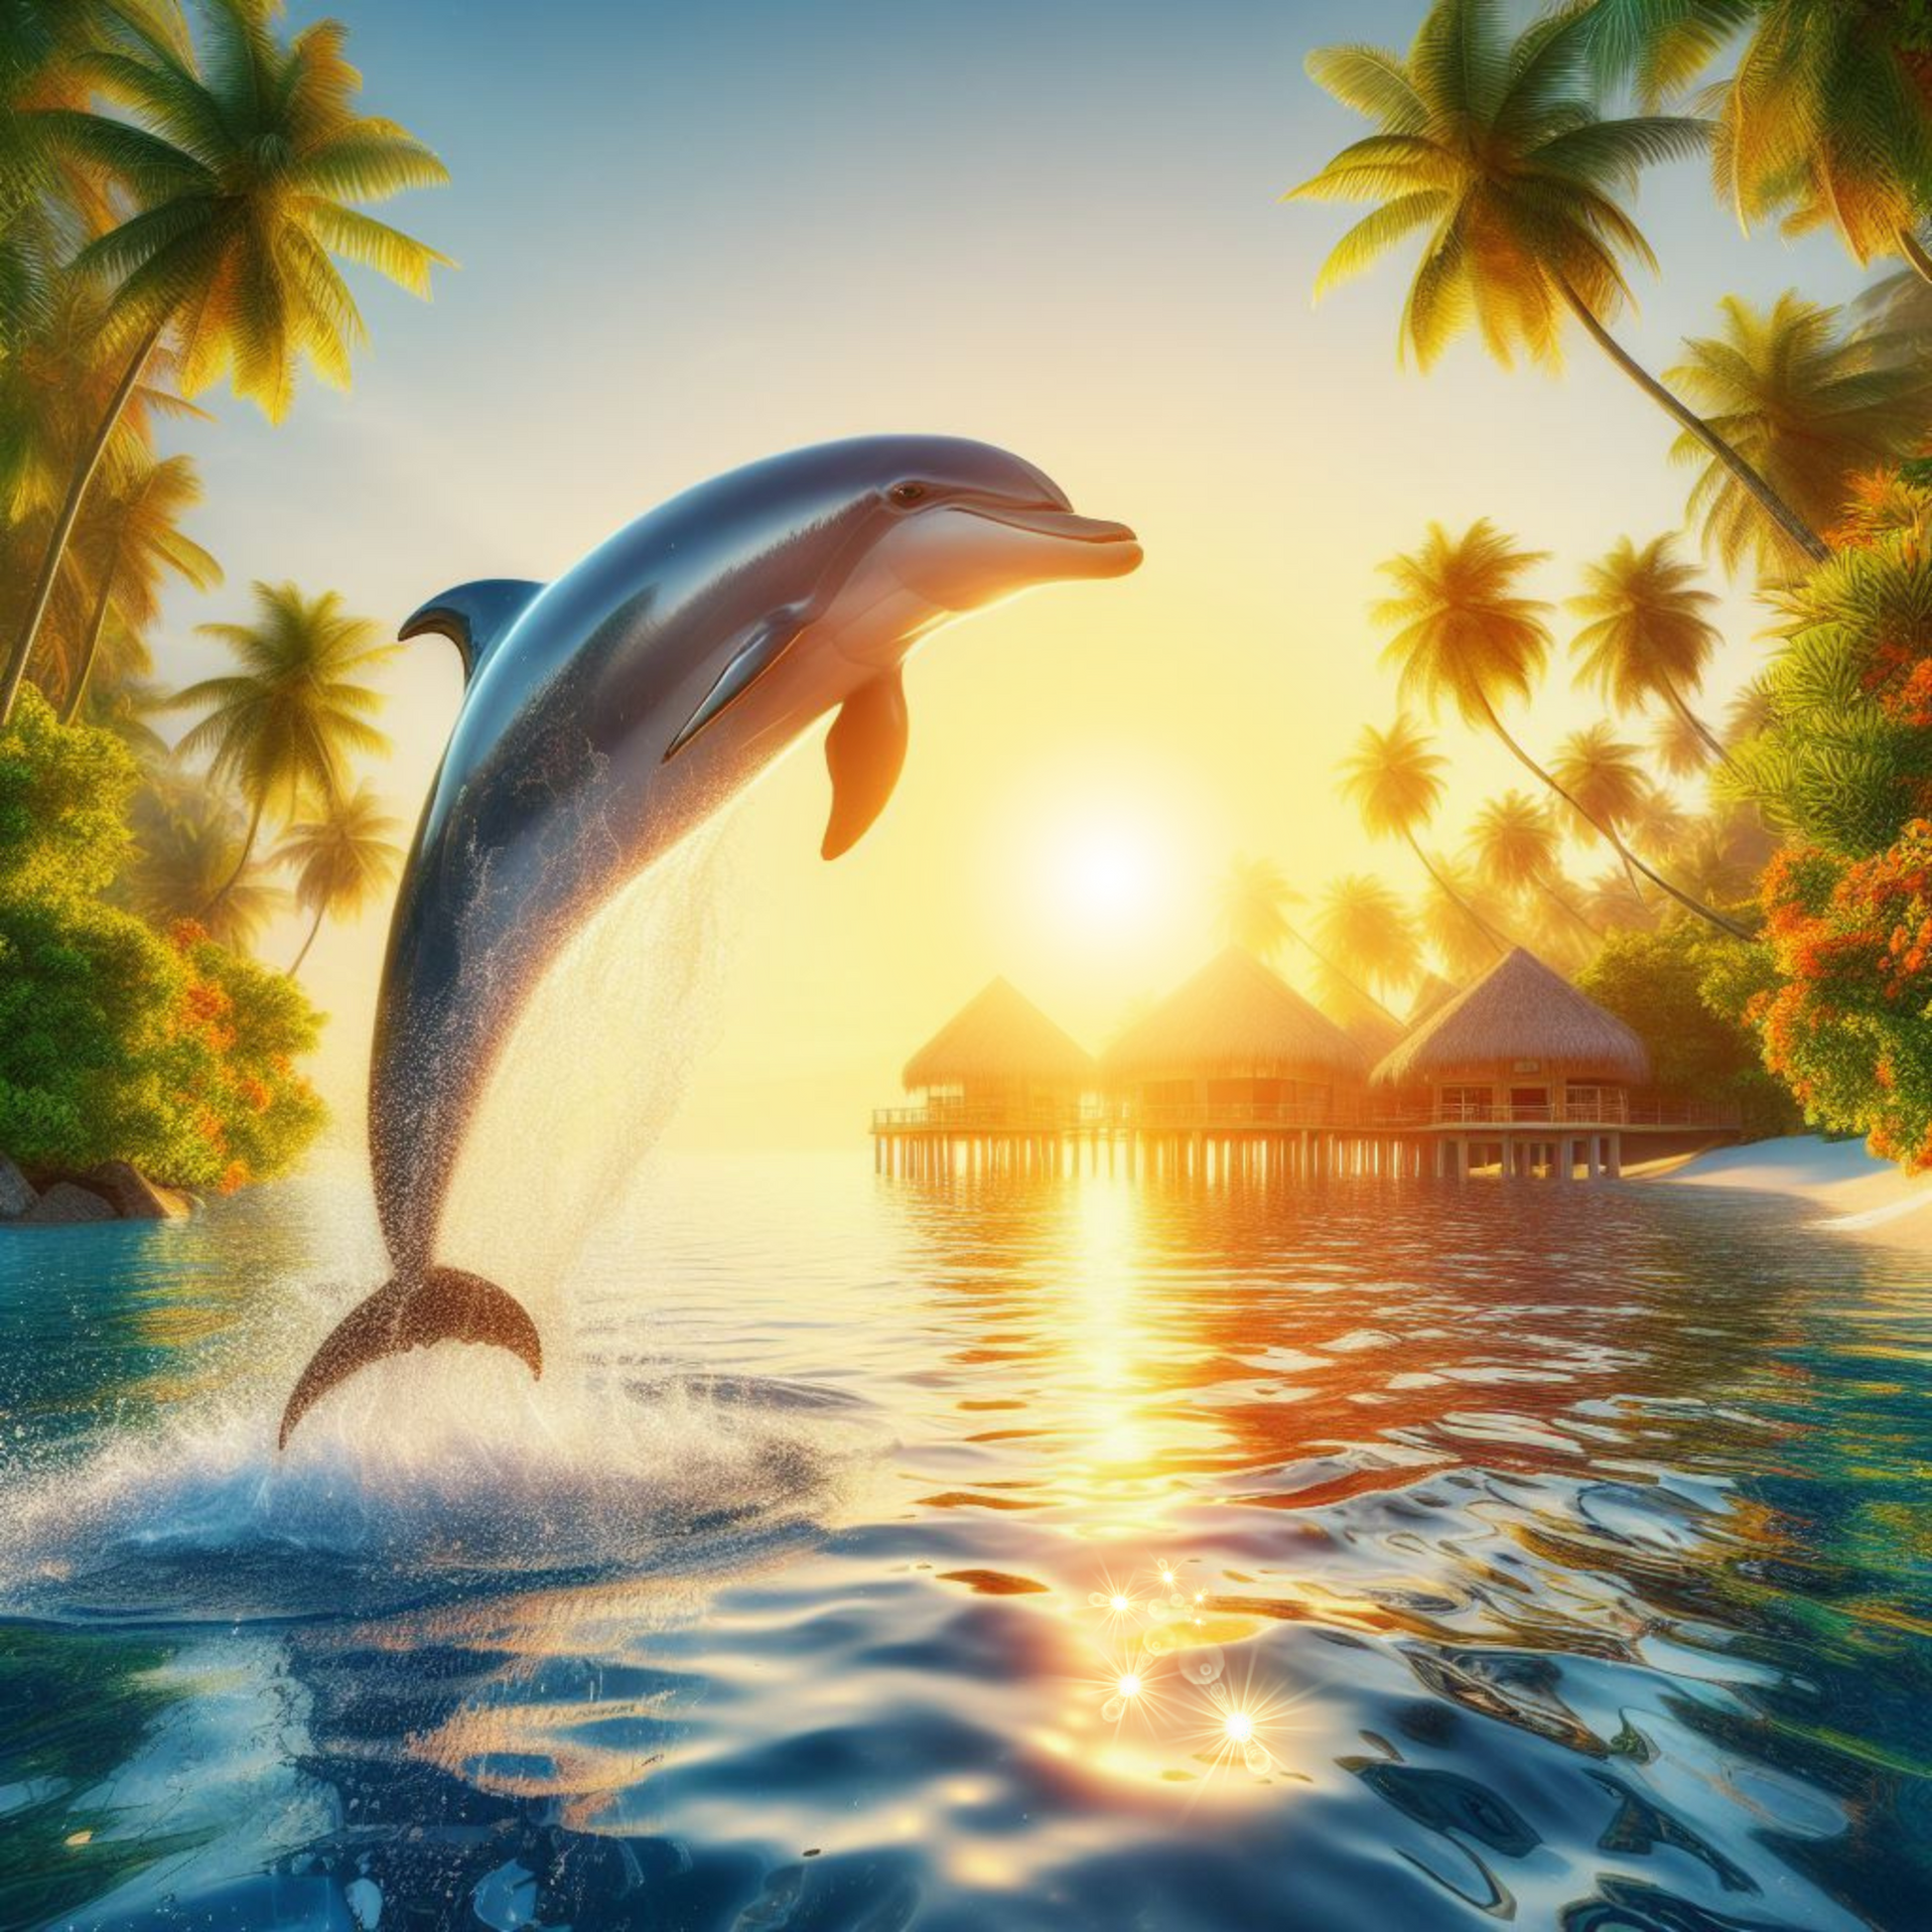 Delphin springt aus dem Wasser einer tropischen Insel bei Sonnenuntergang.